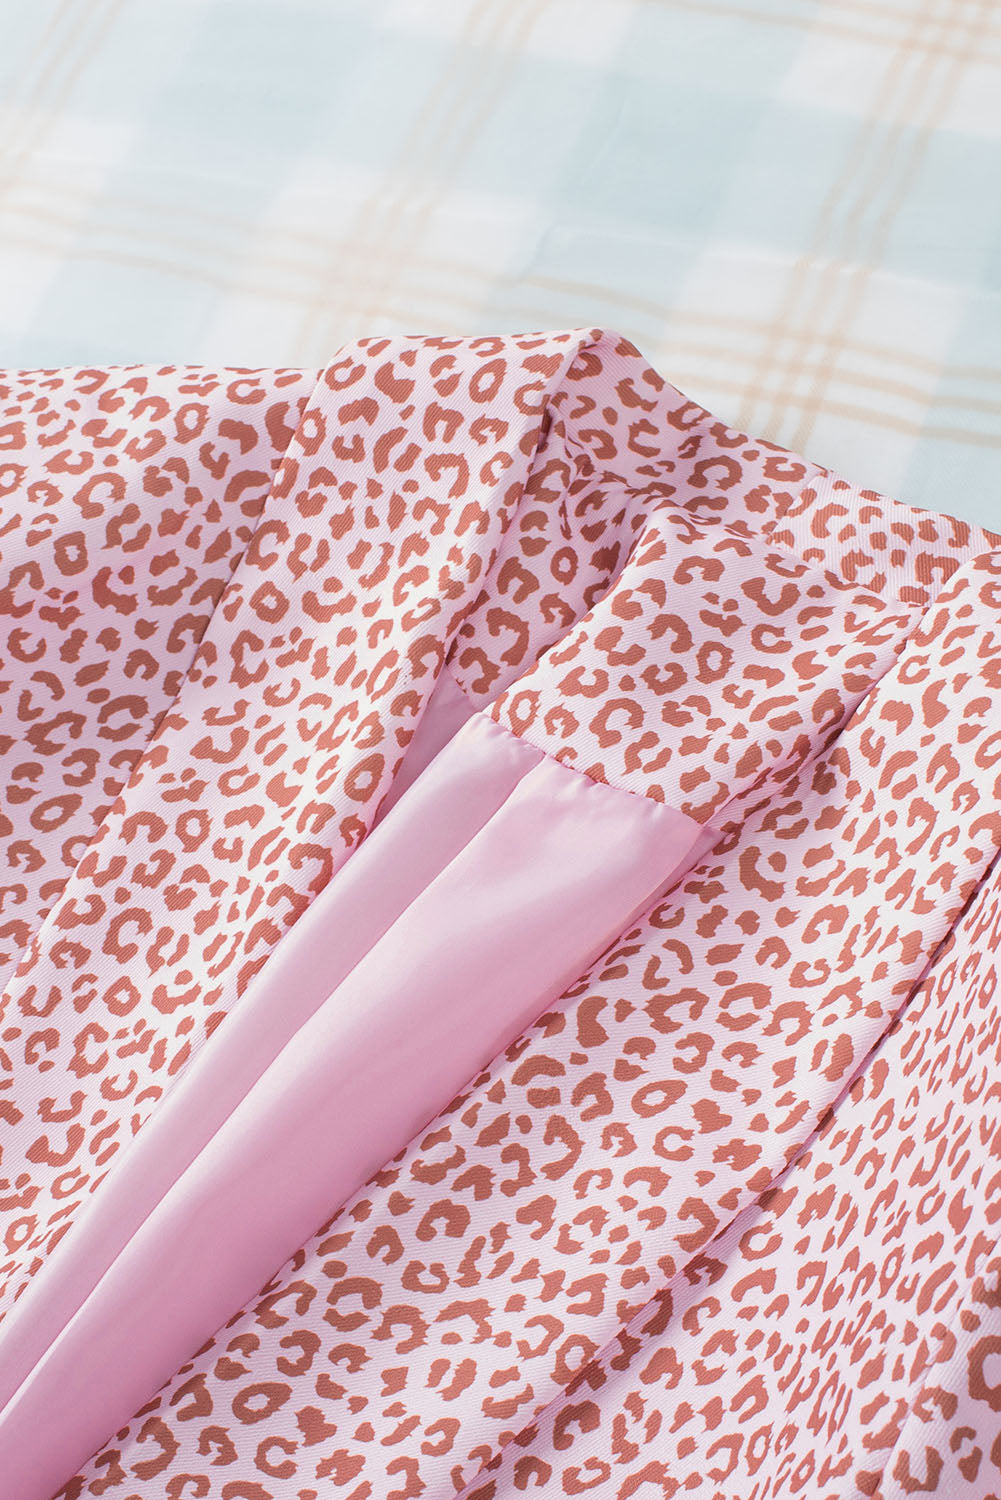 Pink 3/4 Sleeve Leopard Blazer